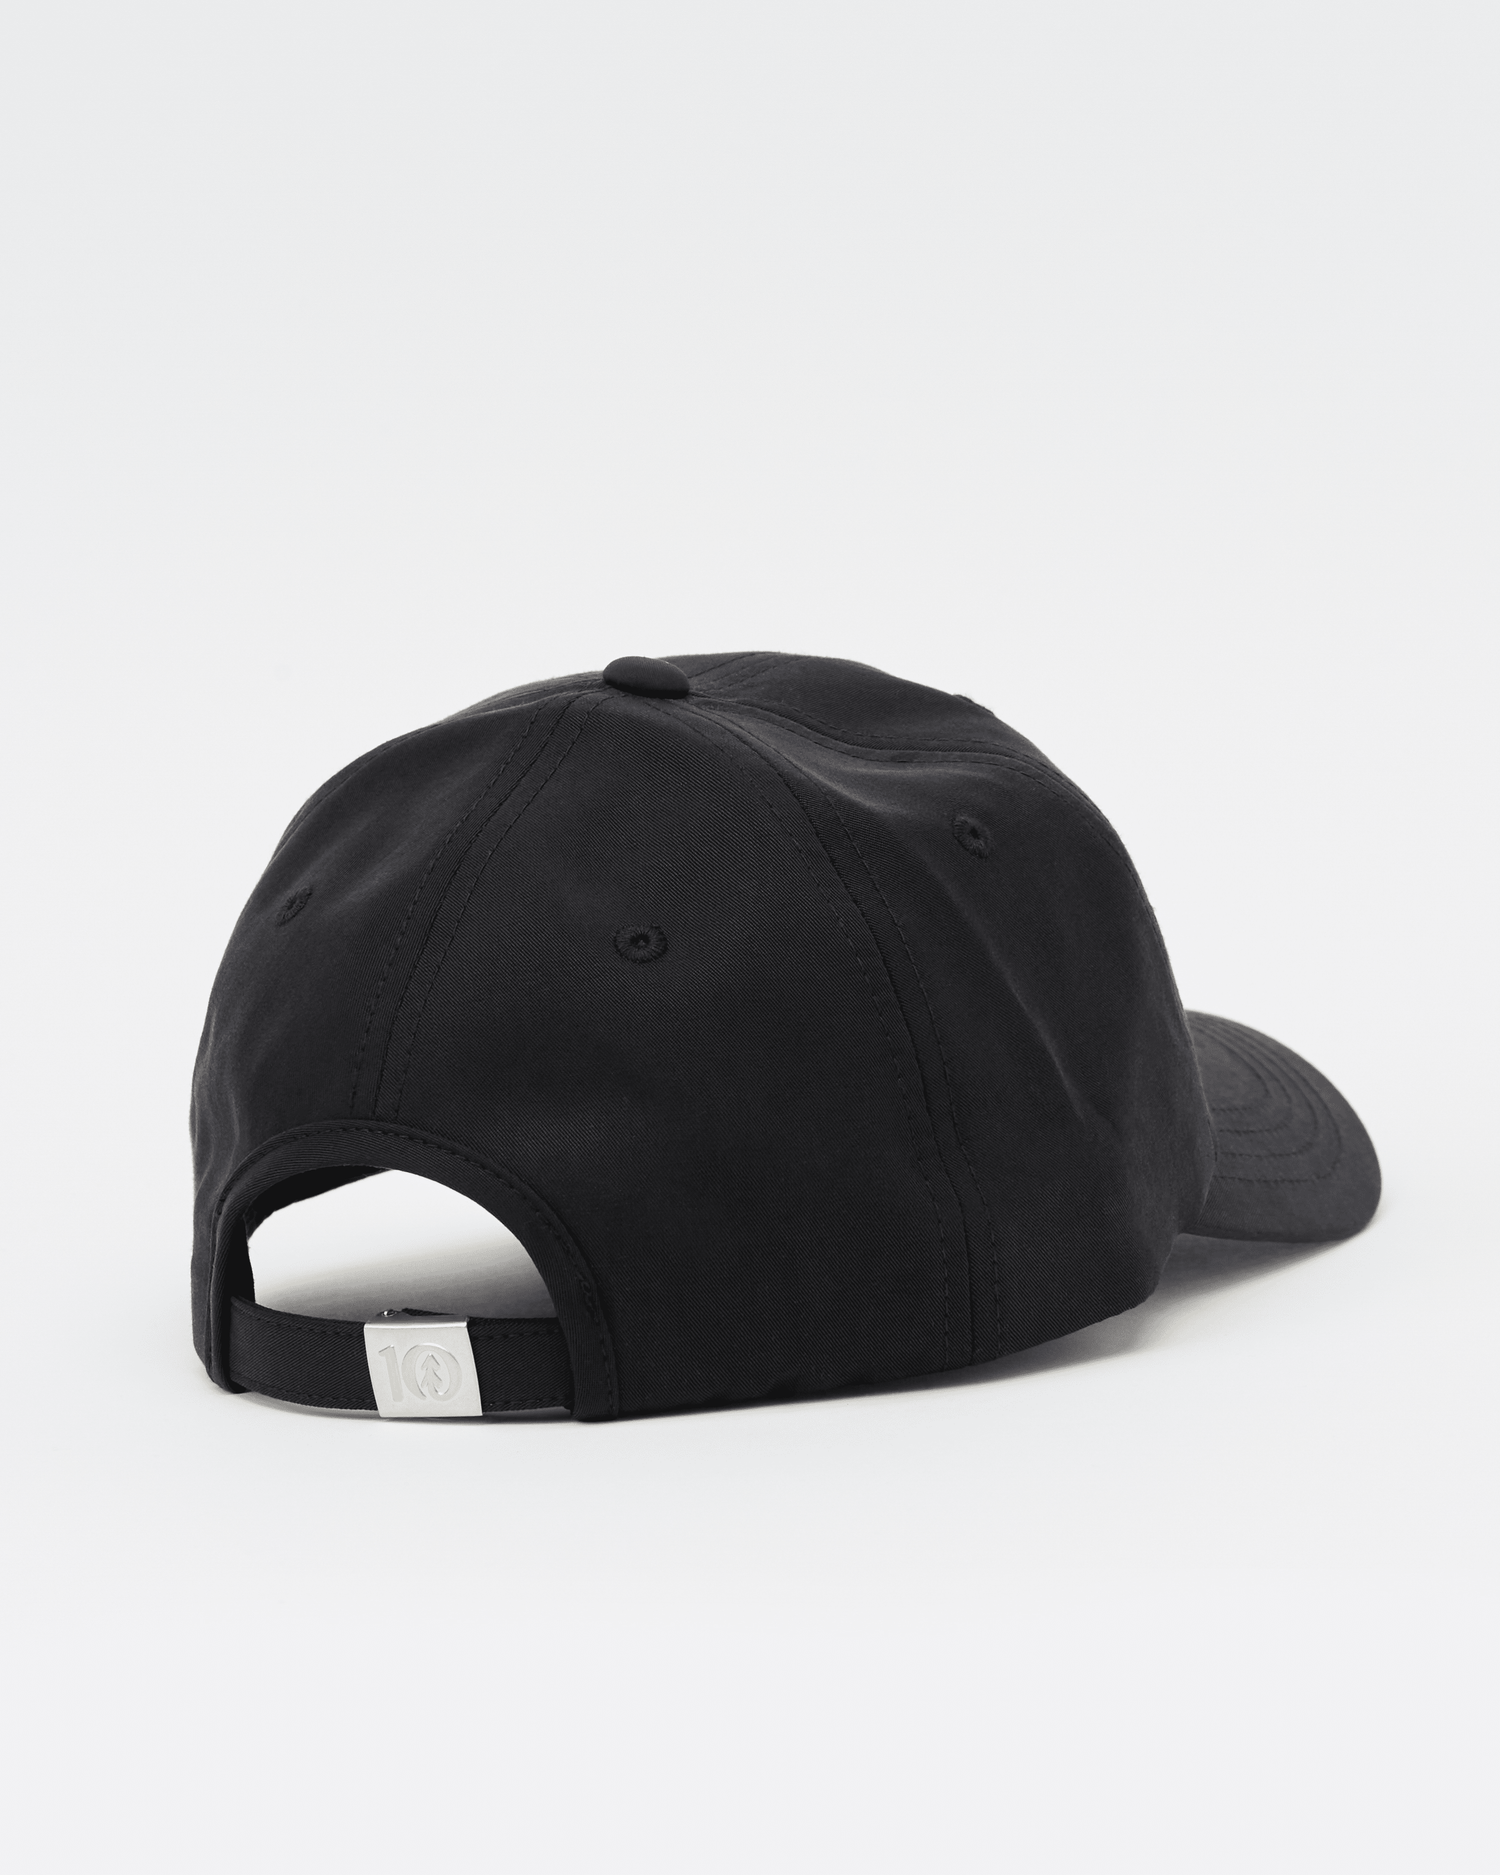 Tentree Sasquatch Peak Hat - 100% TENCEL Lyocell Meteorite Black Headwear